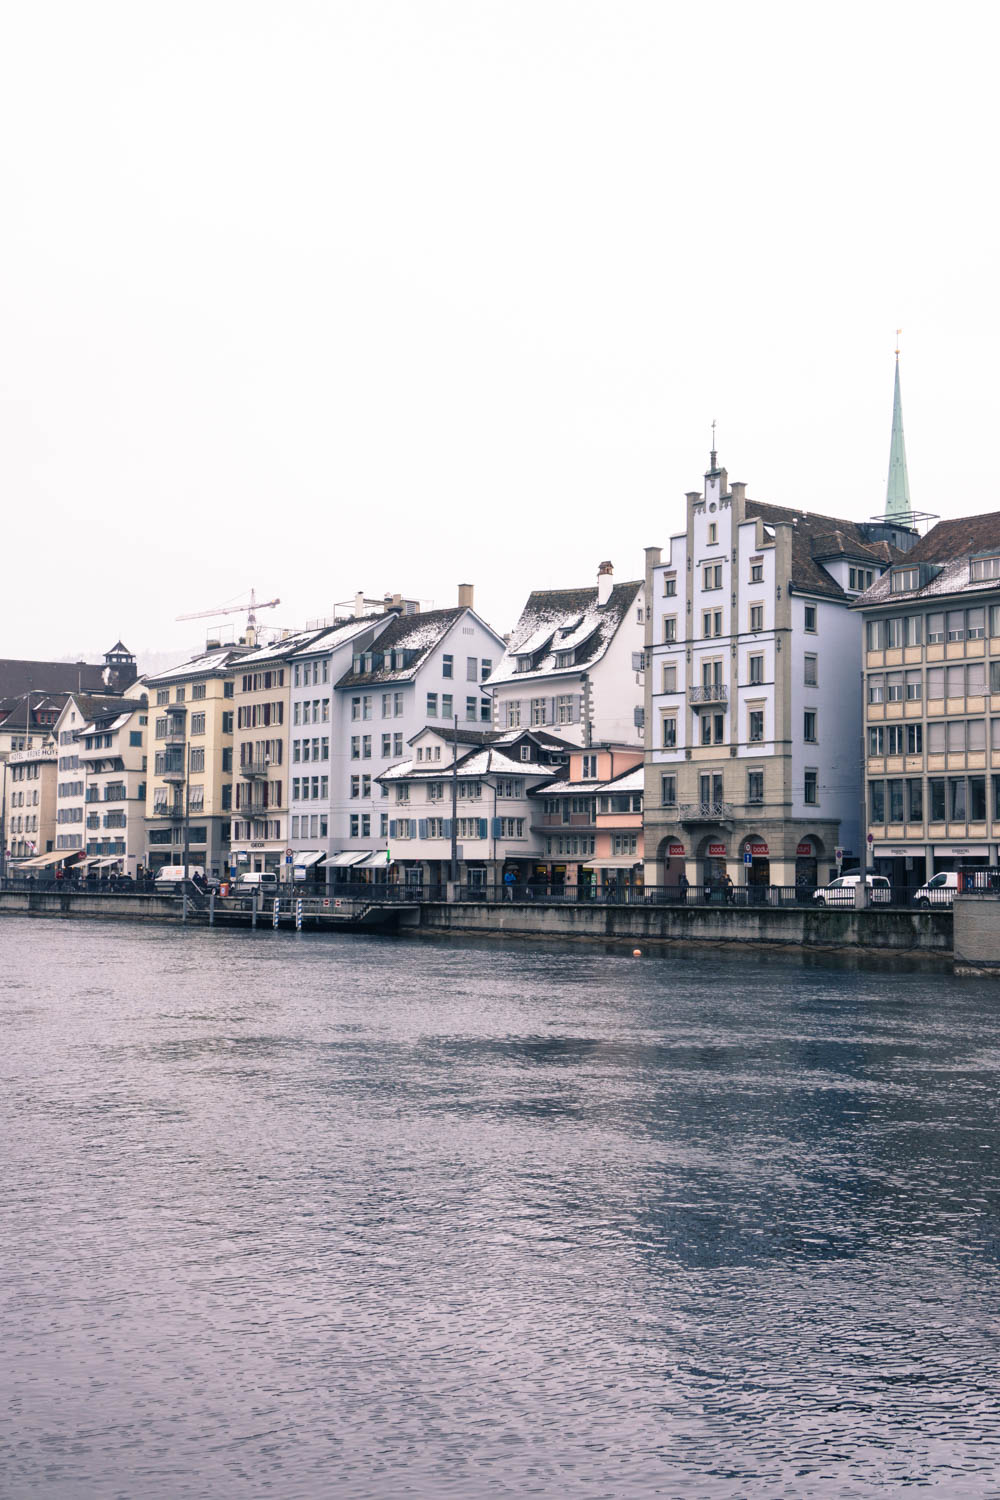 Zurich Switzerland Travel Guide / RG Daily Blog